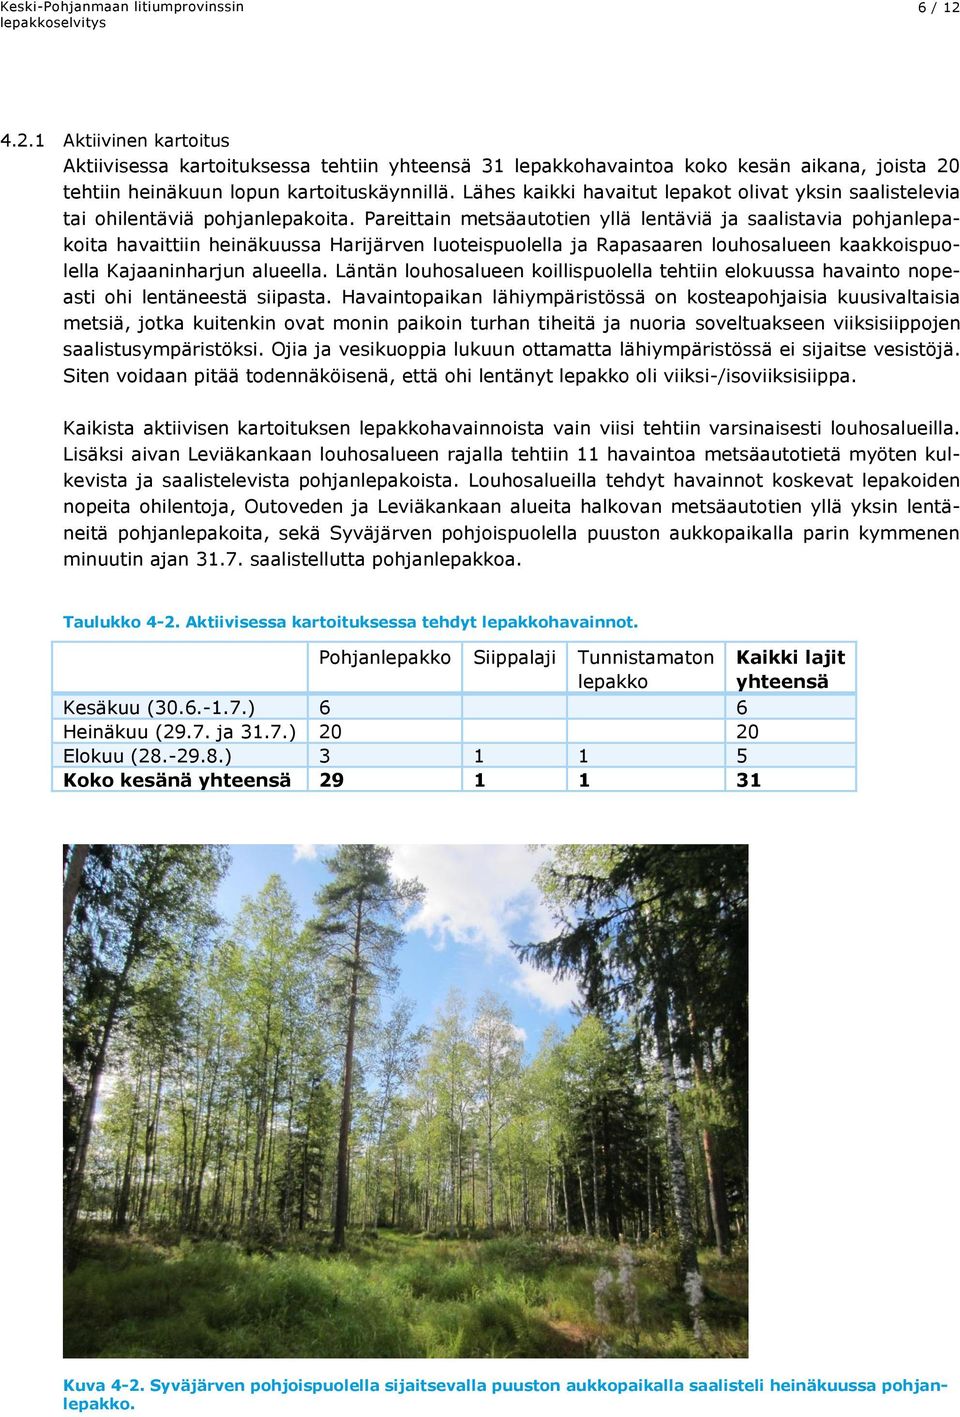 Pareittain metsäautotien yllä lentäviä ja saalistavia pohjanlepakoita havaittiin heinäkuussa Harijärven luoteispuolella ja Rapasaaren louhosalueen kaakkoispuolella Kajaaninharjun alueella.